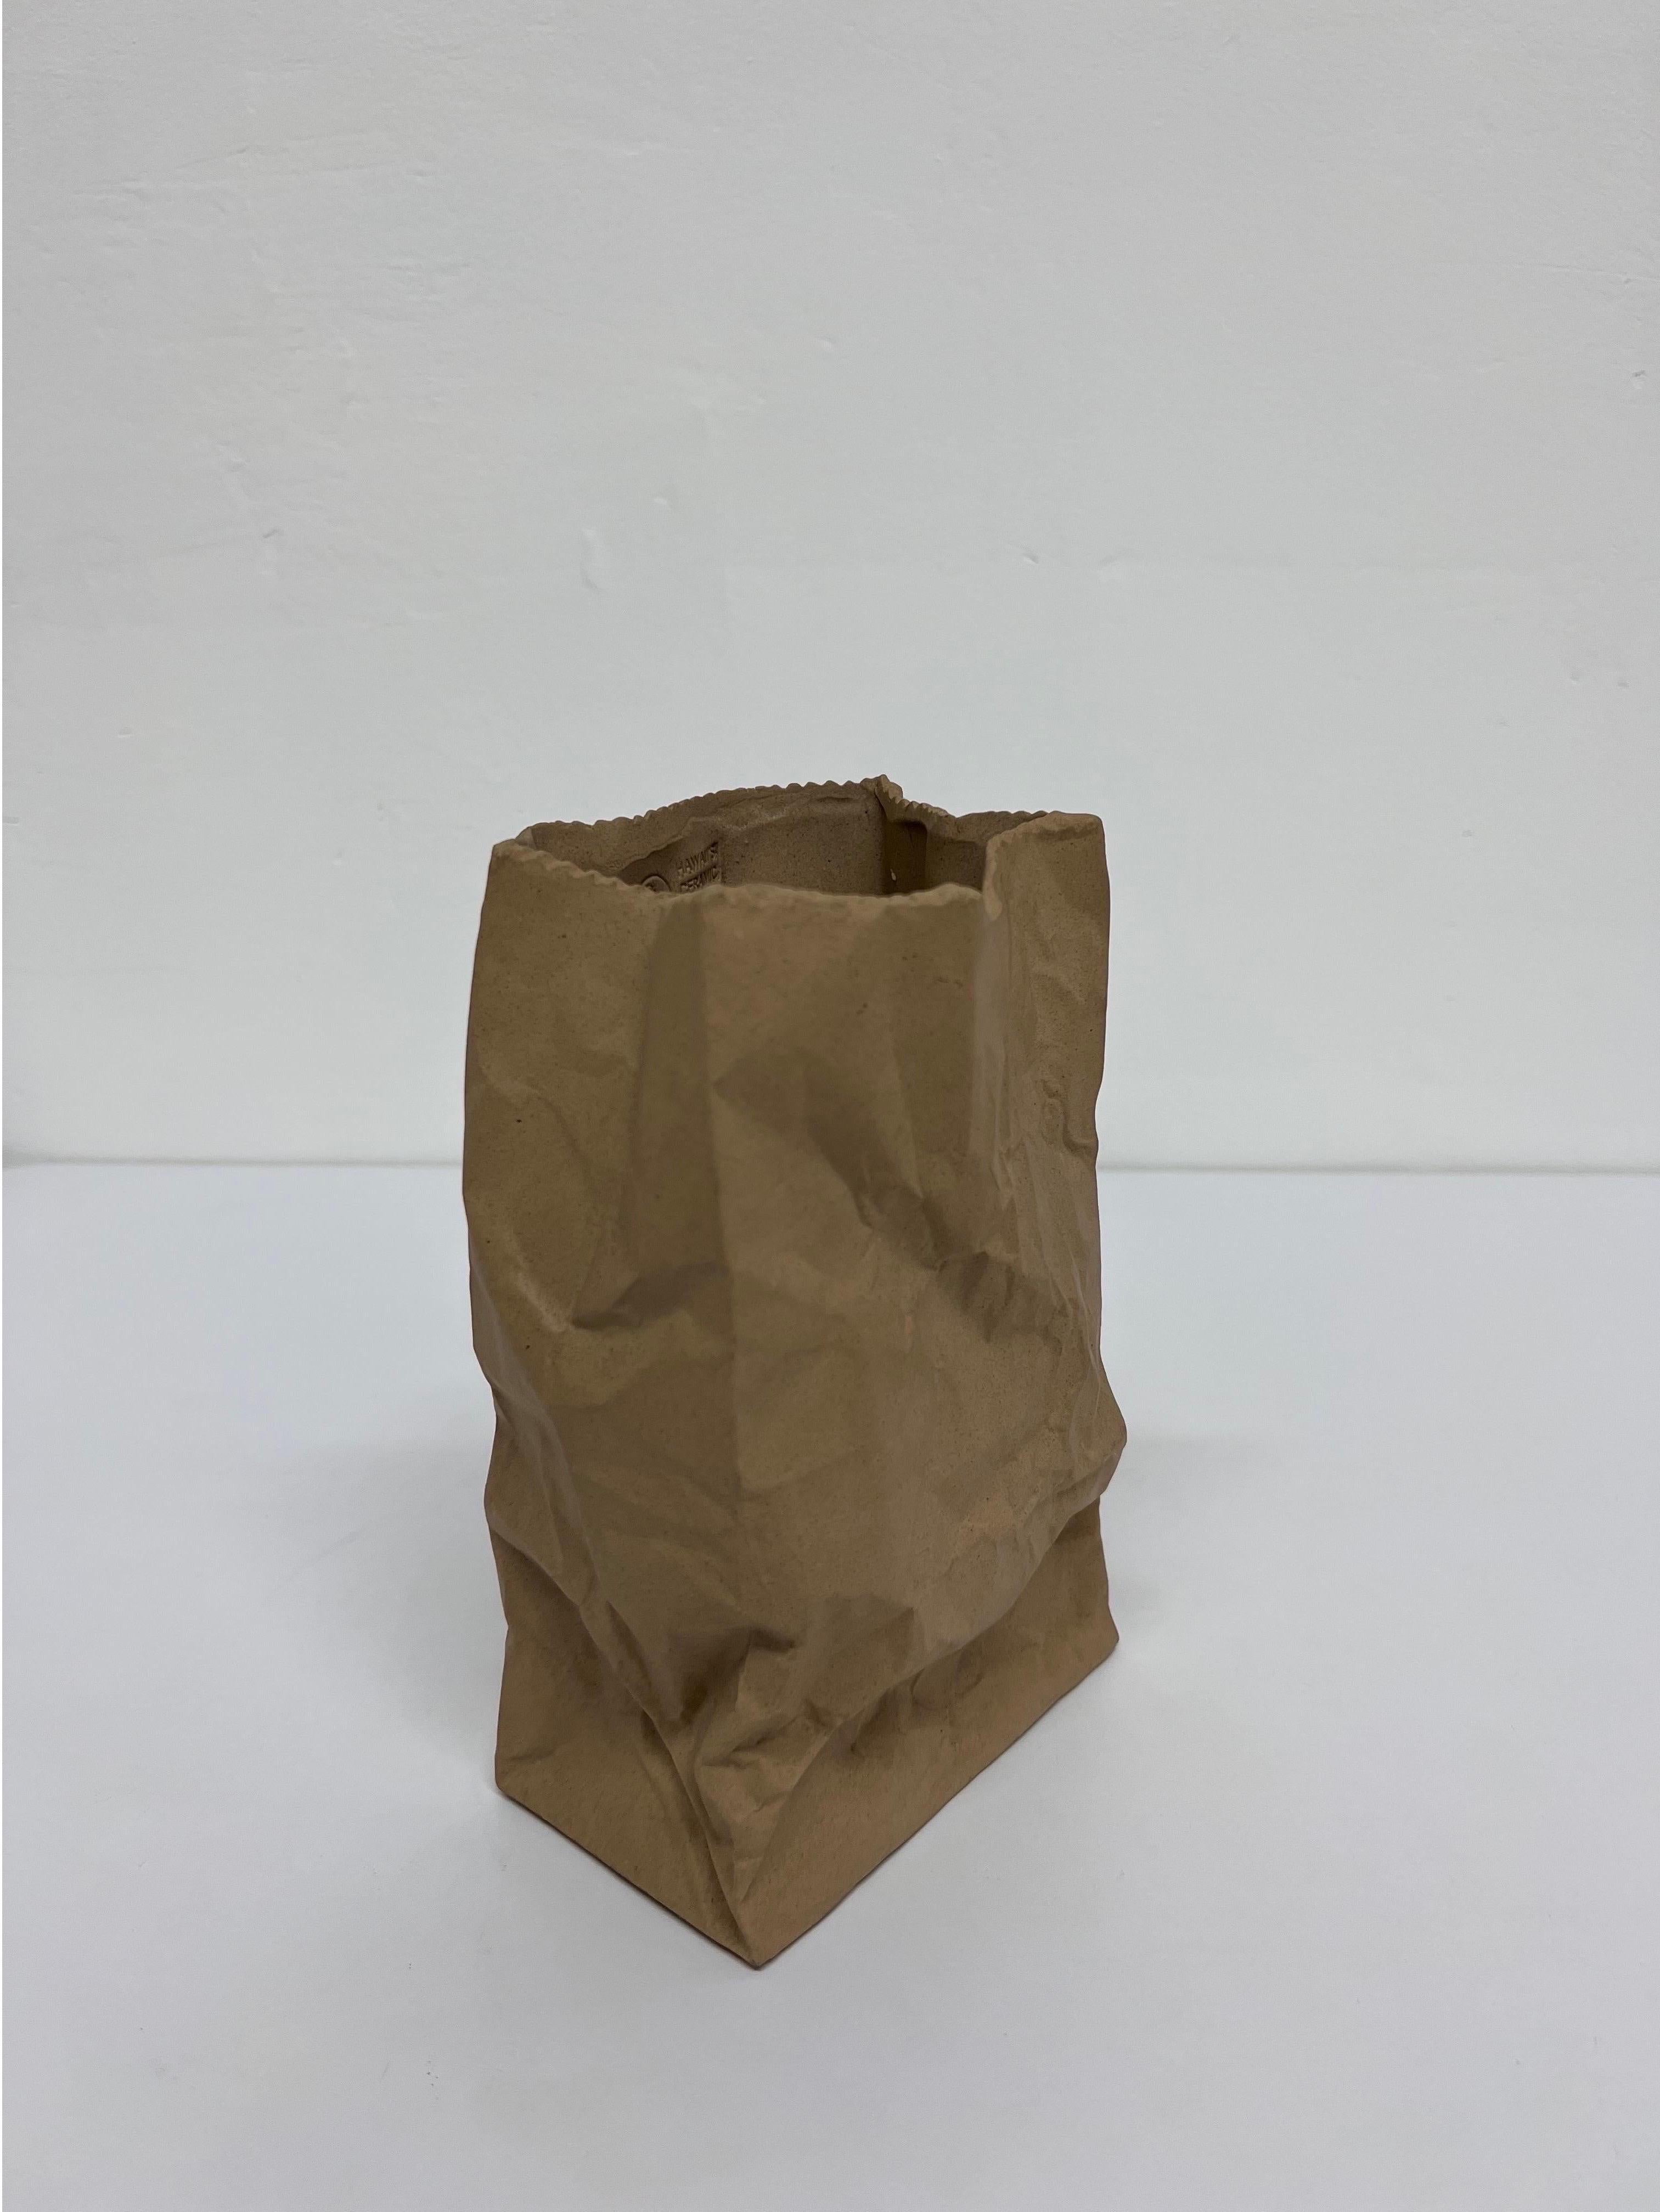 paper bag sculpture